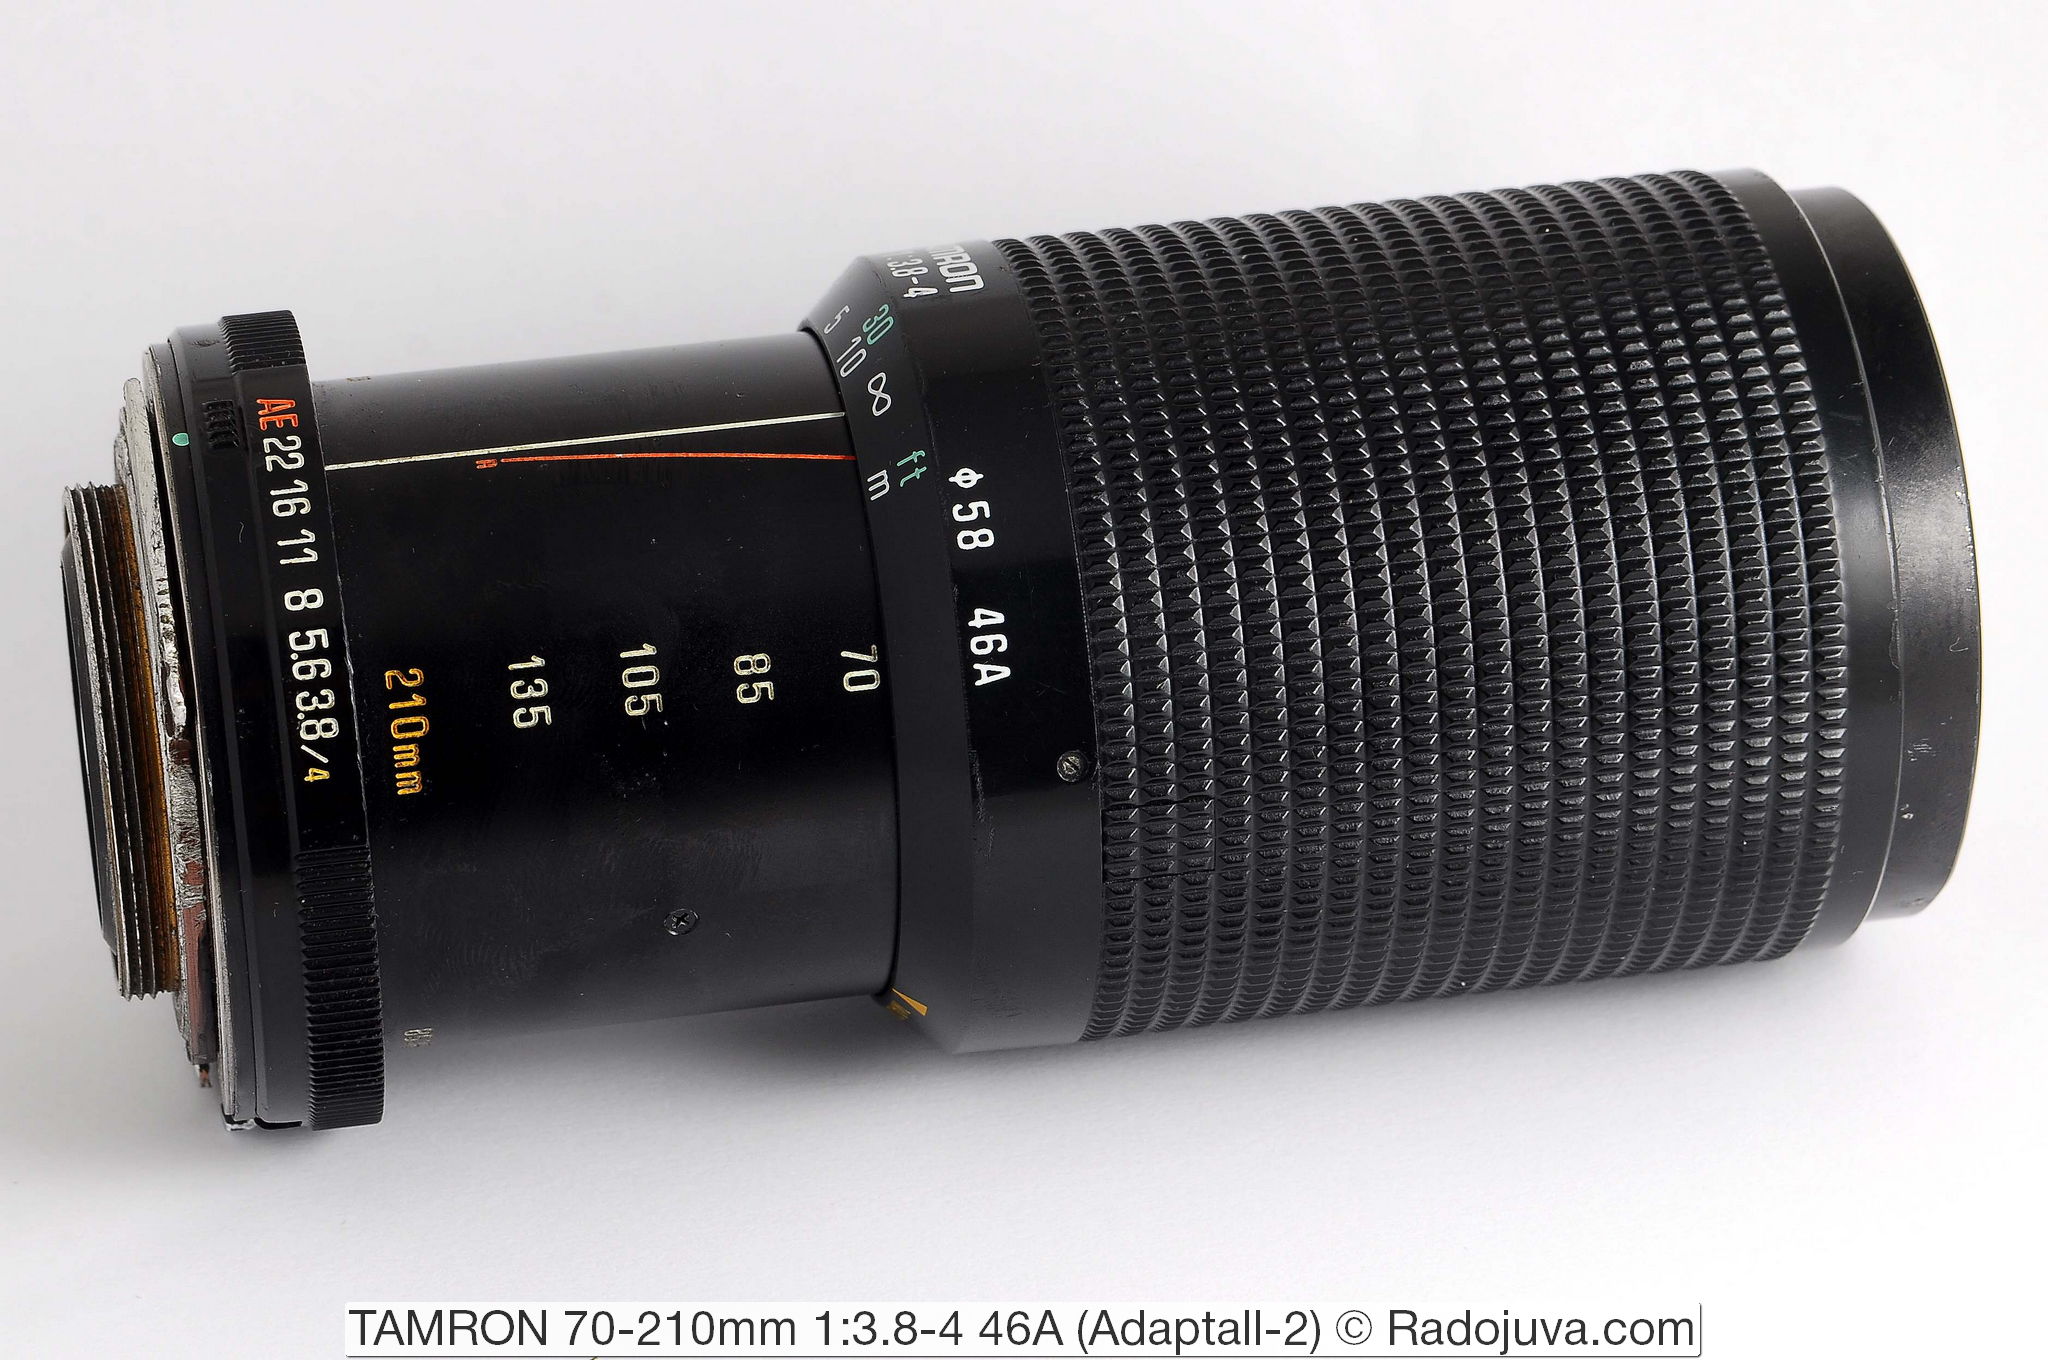 TAMRON 70-210mm 1:3.8-4 46A (Adaptall-2)